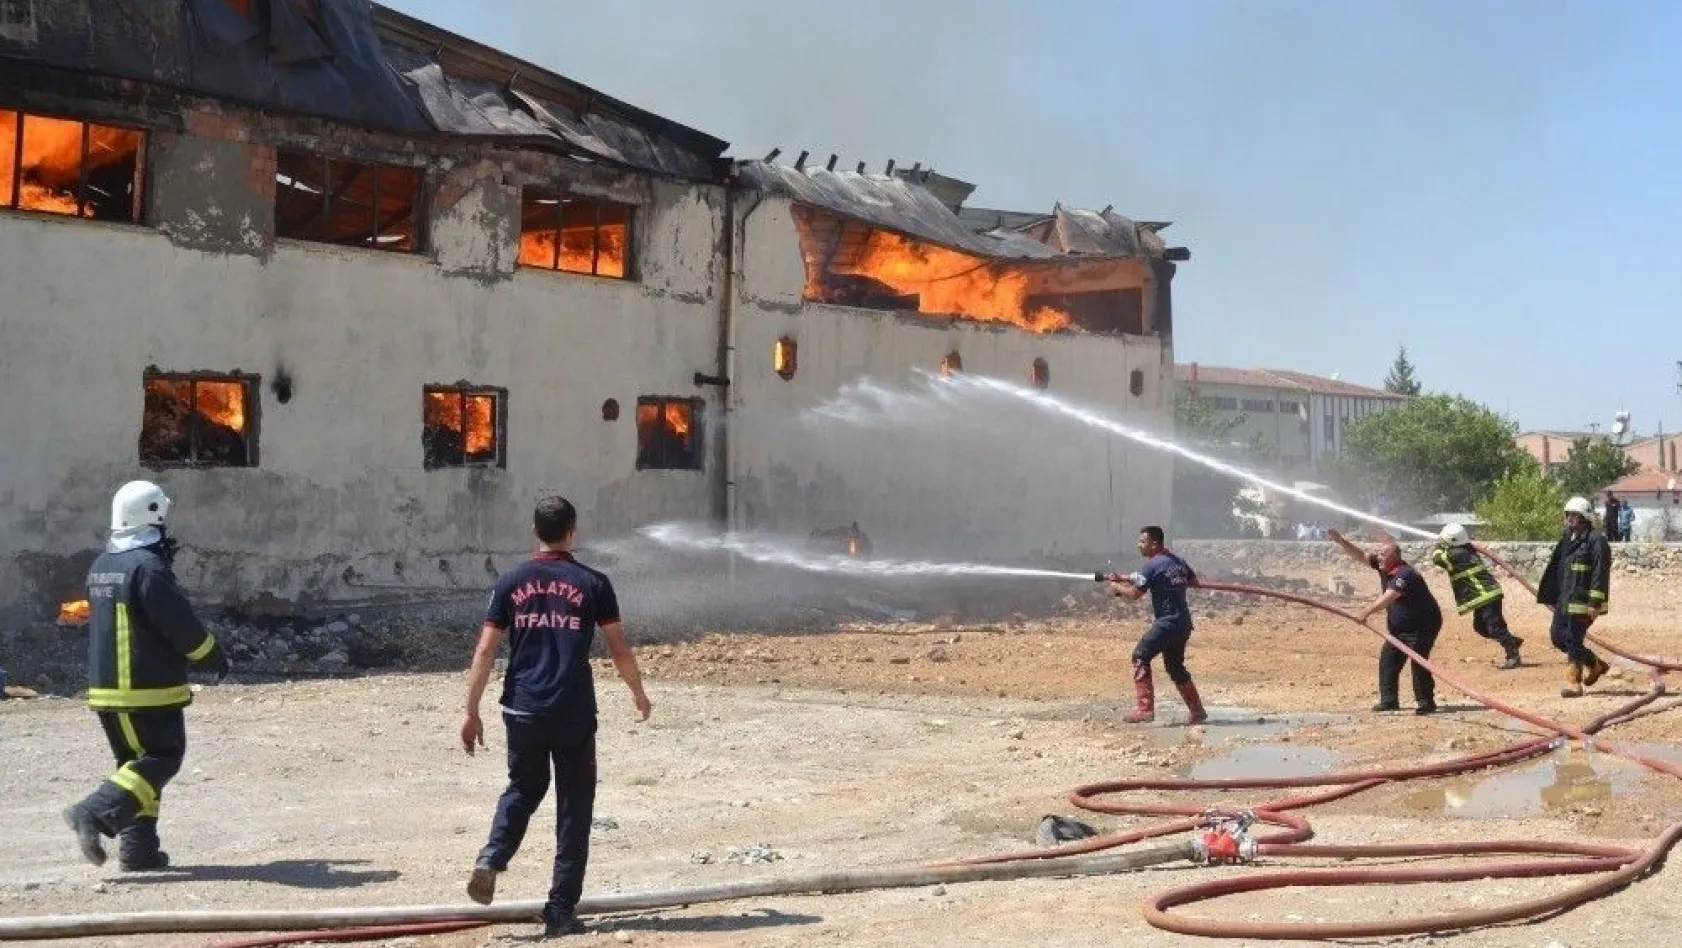 Ambalaj fabrikası alev alev yandı
